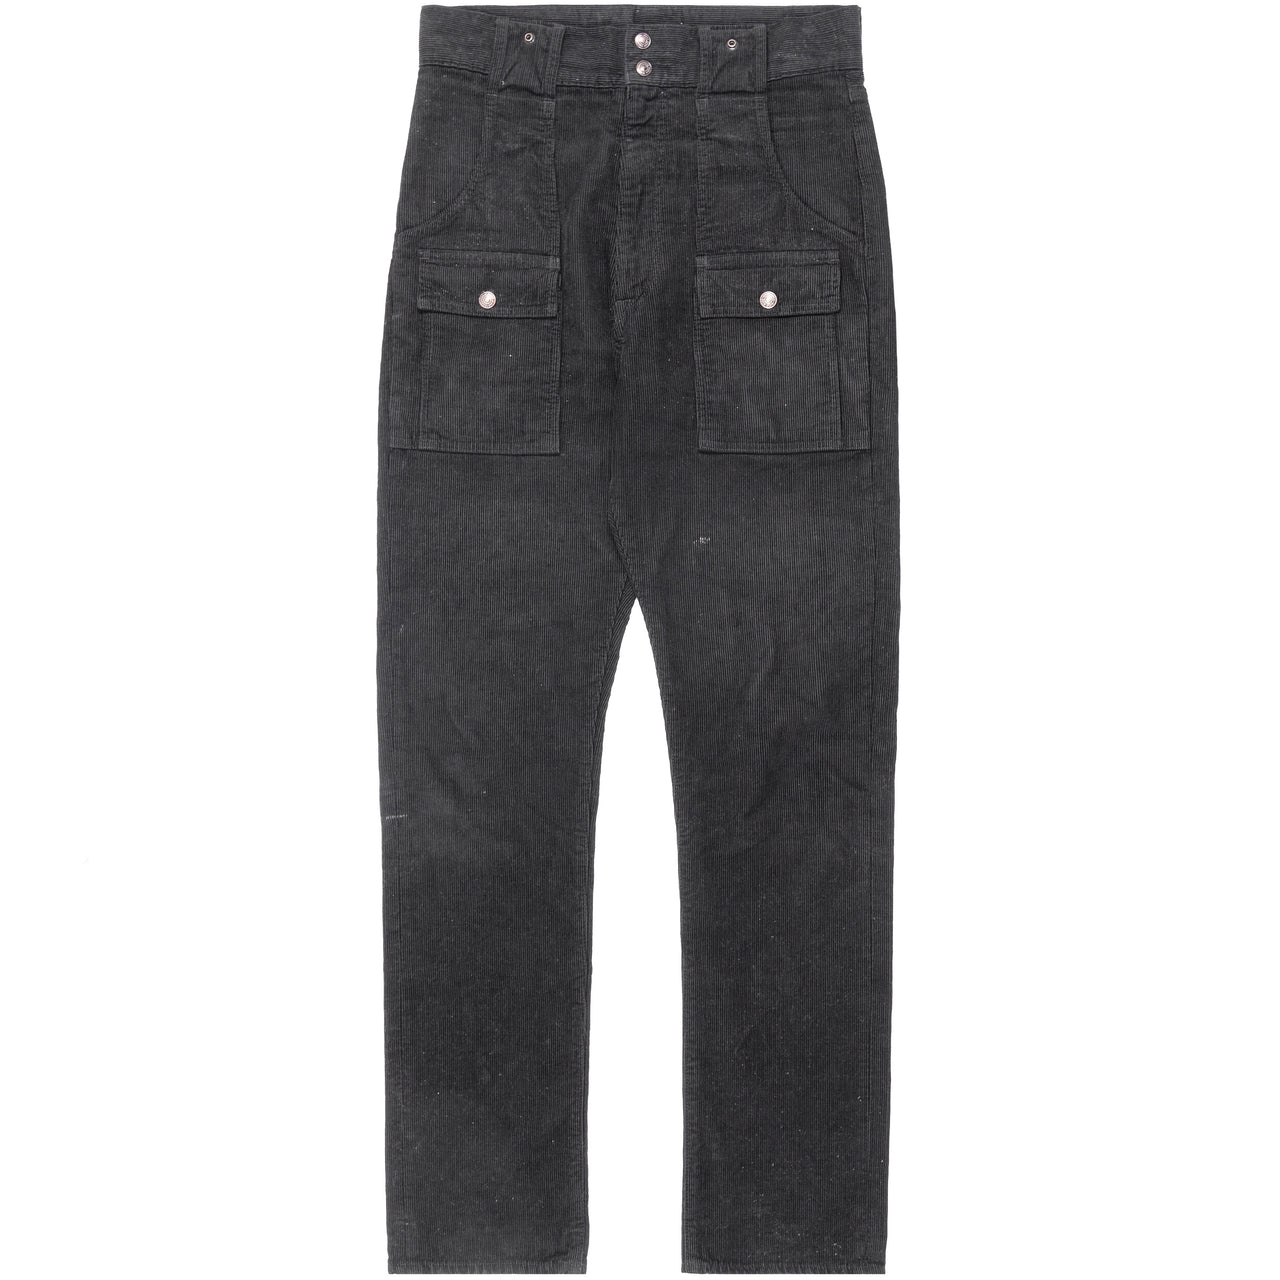 Kapital Black Corduroy Bush Jeans